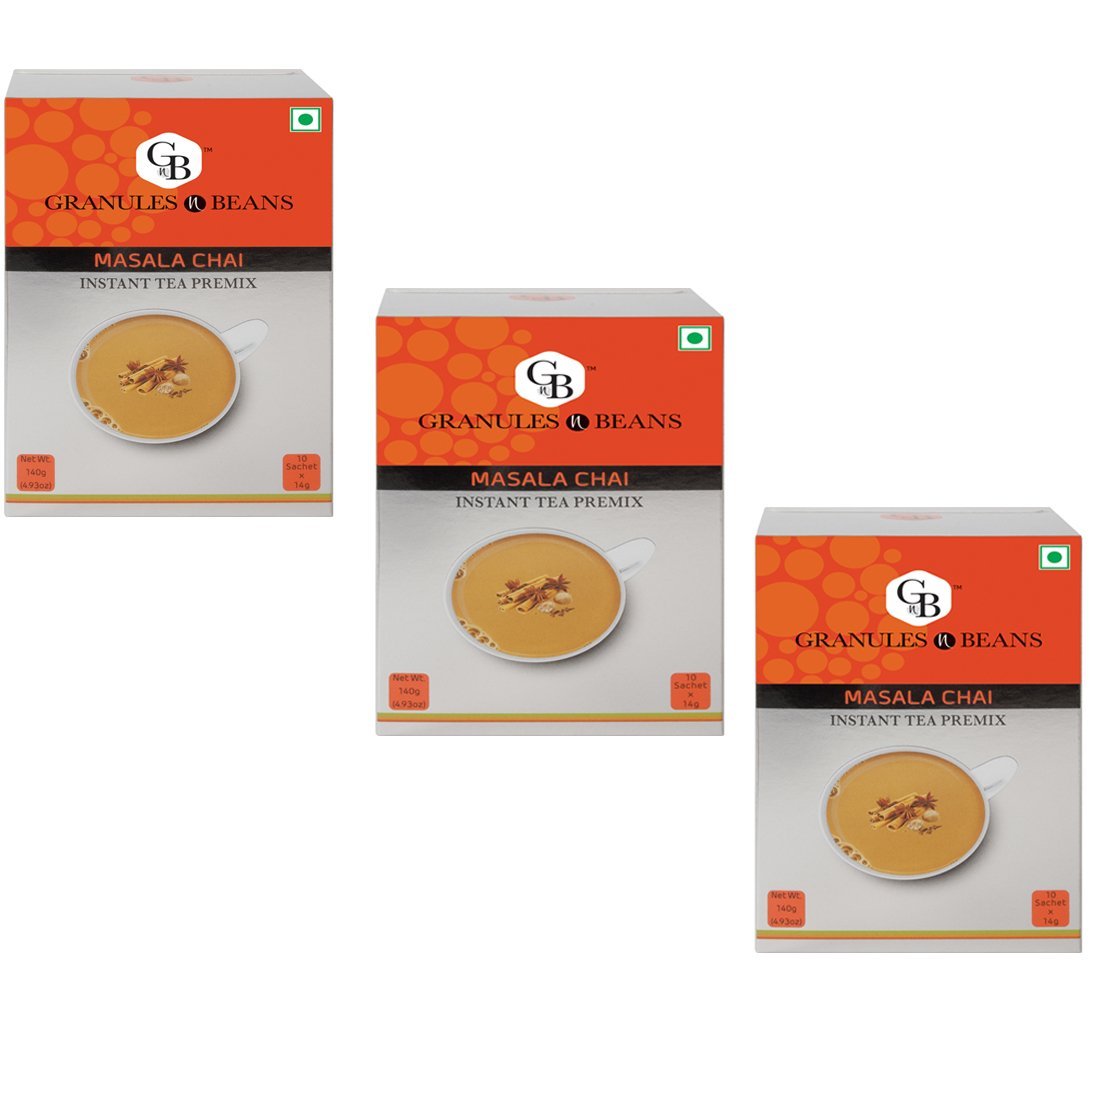 Granules n Beans Masala Chai Instant tea Premix - (10 Sachet x 14g = 140g) (Pack of 3)